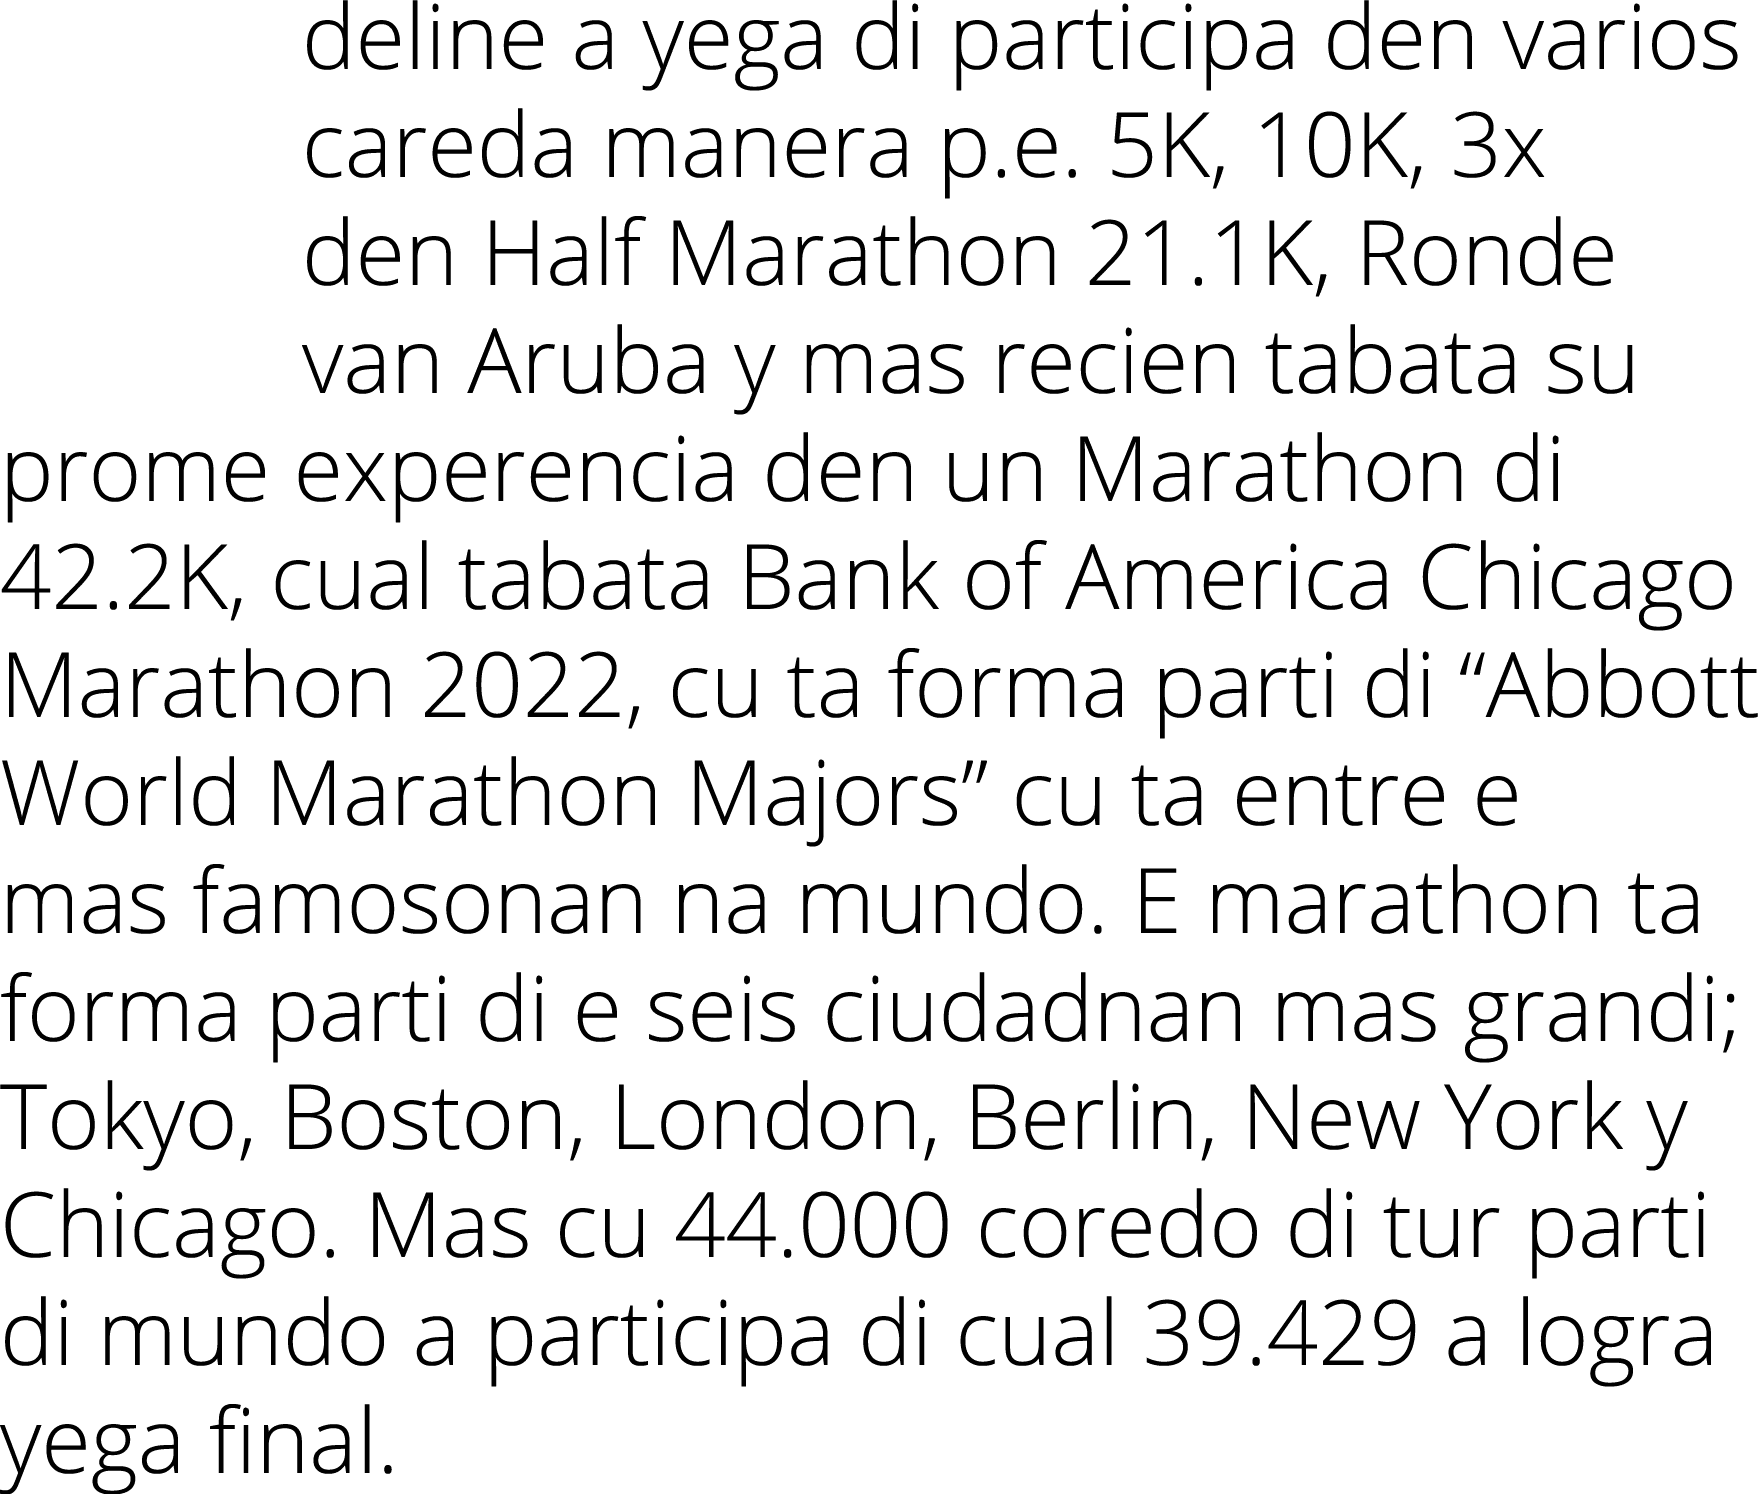 deline a yega di participa den varios careda manera p.e. 5K, 10K, 3x den Half Marathon 21.1K, Ronde van Aruba y mas r...